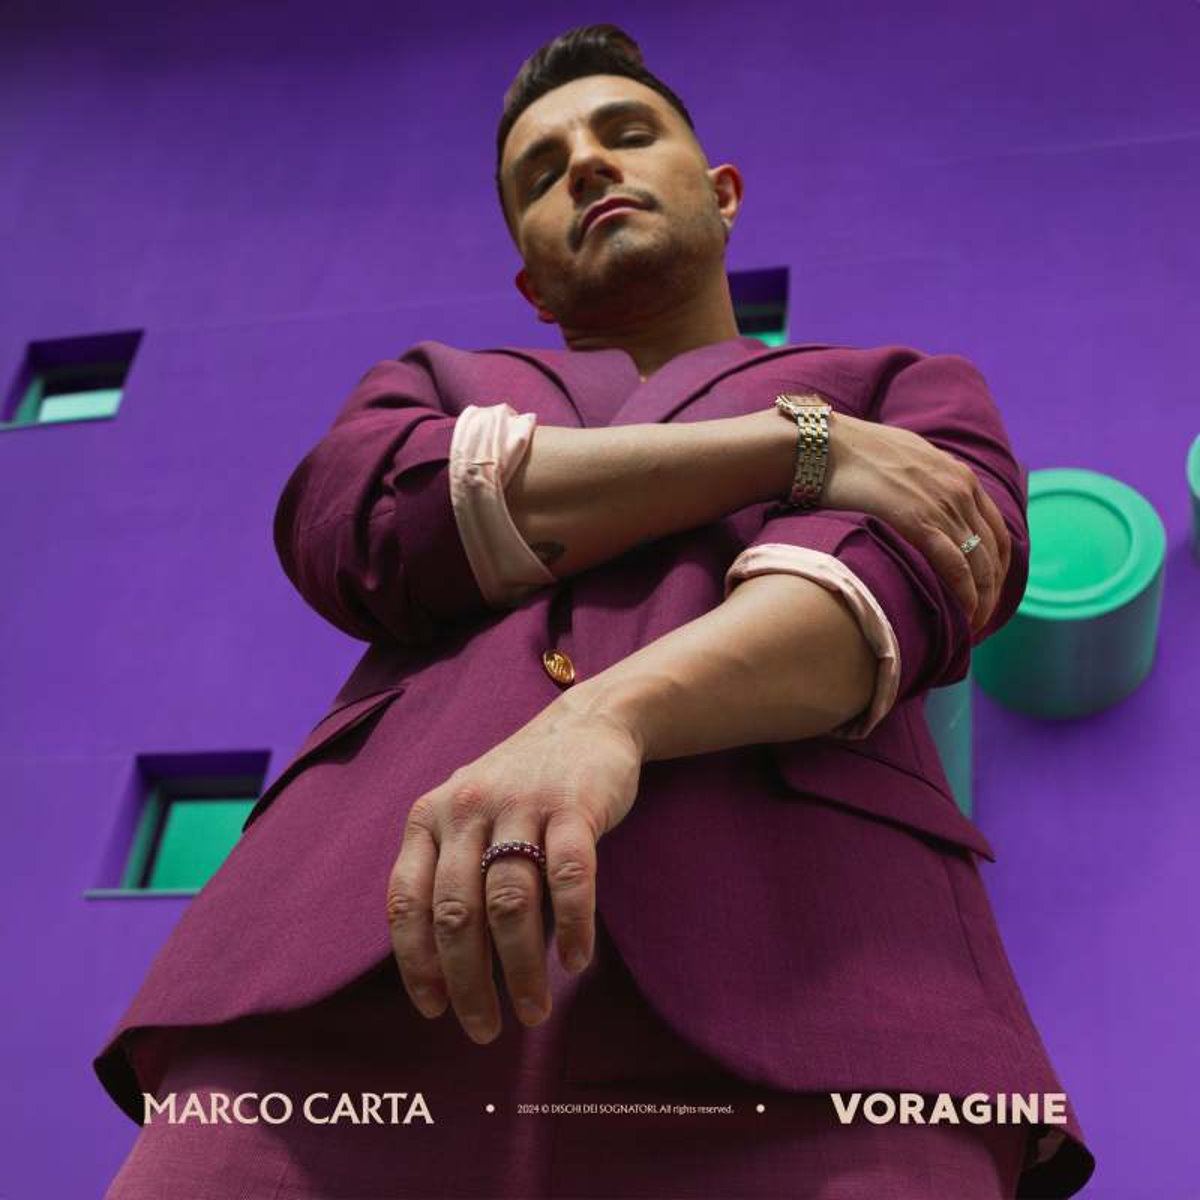 Voragine è il nuovo singolo di Marco Carta, disponibile su tutte le piattaforme digitali dal 17 maggio